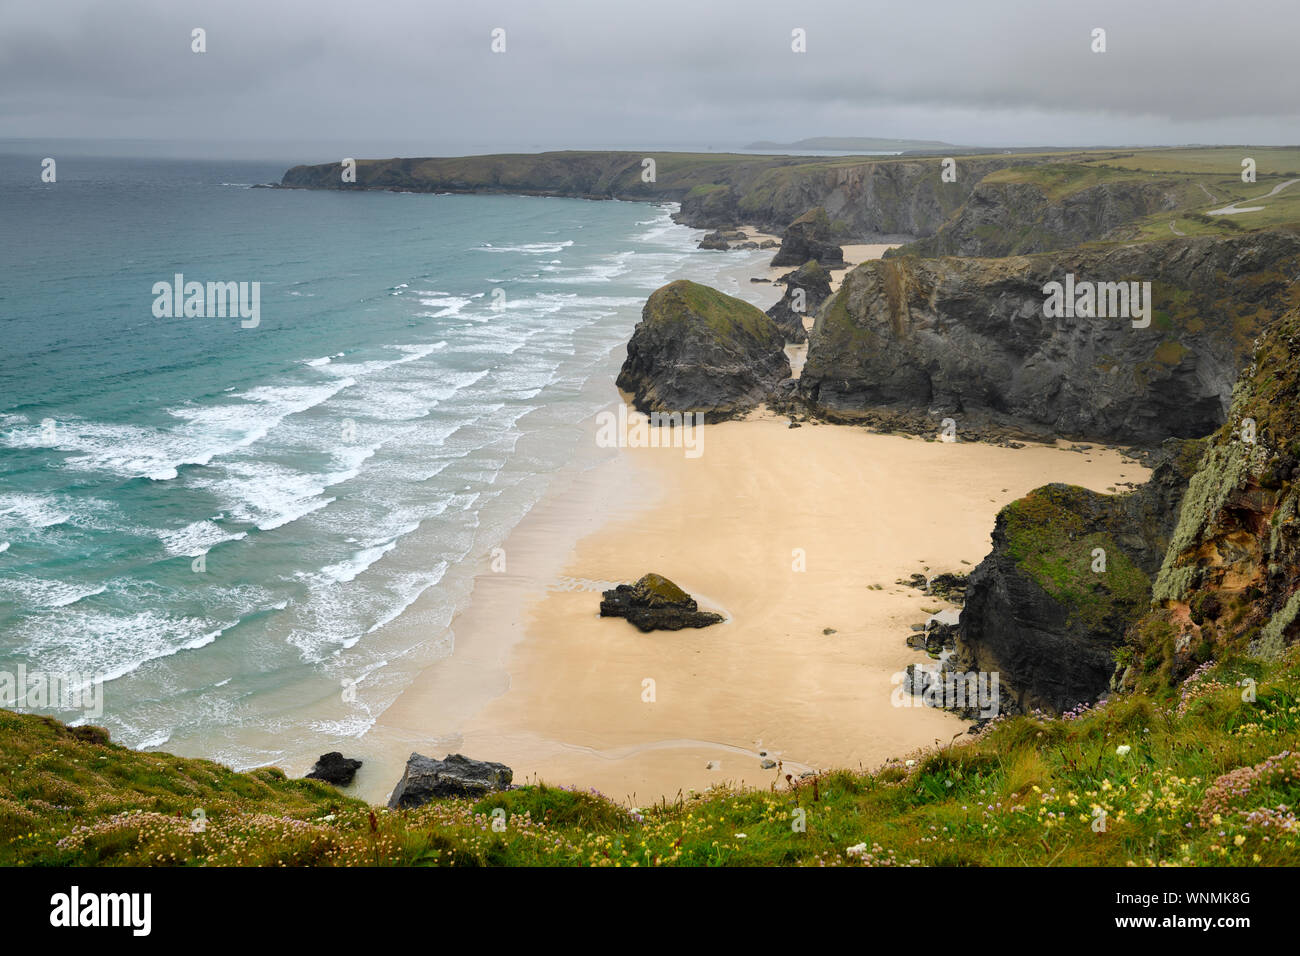 Los fuertes vientos y lluvias en pasos Bedruthan pilas al mar y la playa de arena en el Mar Céltico costa de Cornwall Inglaterra Foto de stock